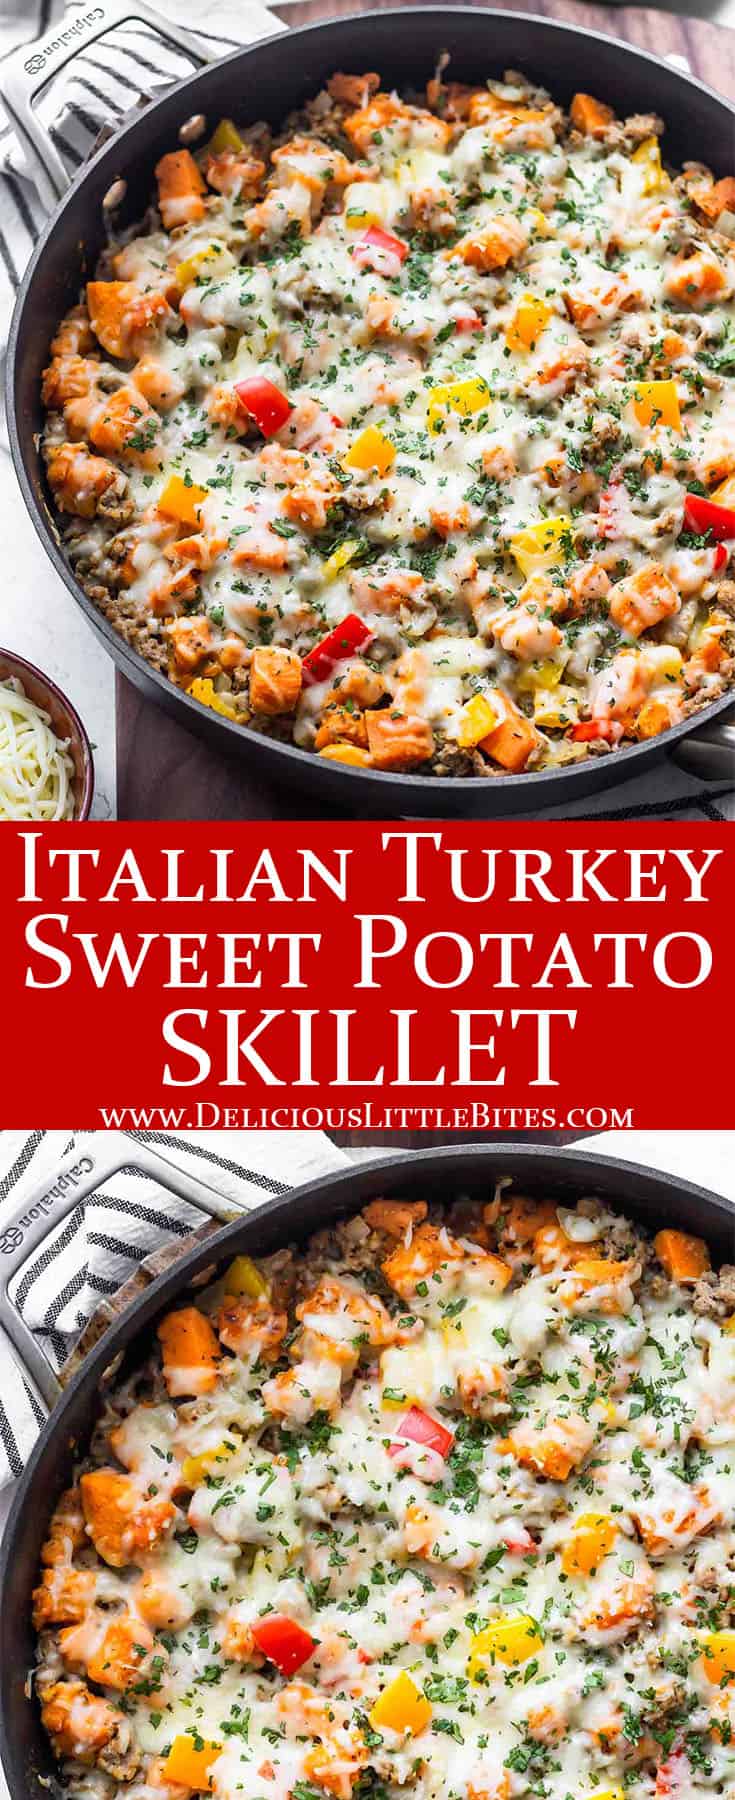 Italian Turkey Sweet Potato Skillet - Delicious Little Bites